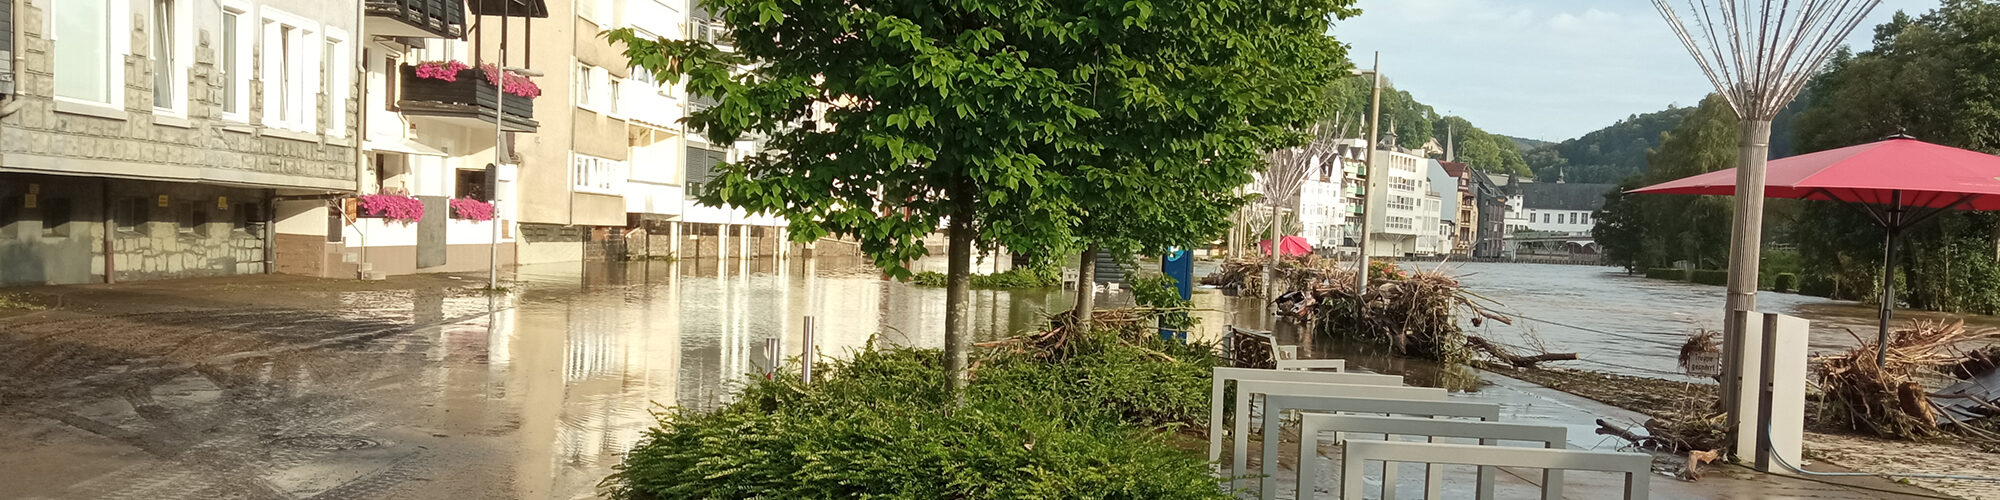 Hochwasser in Altena.